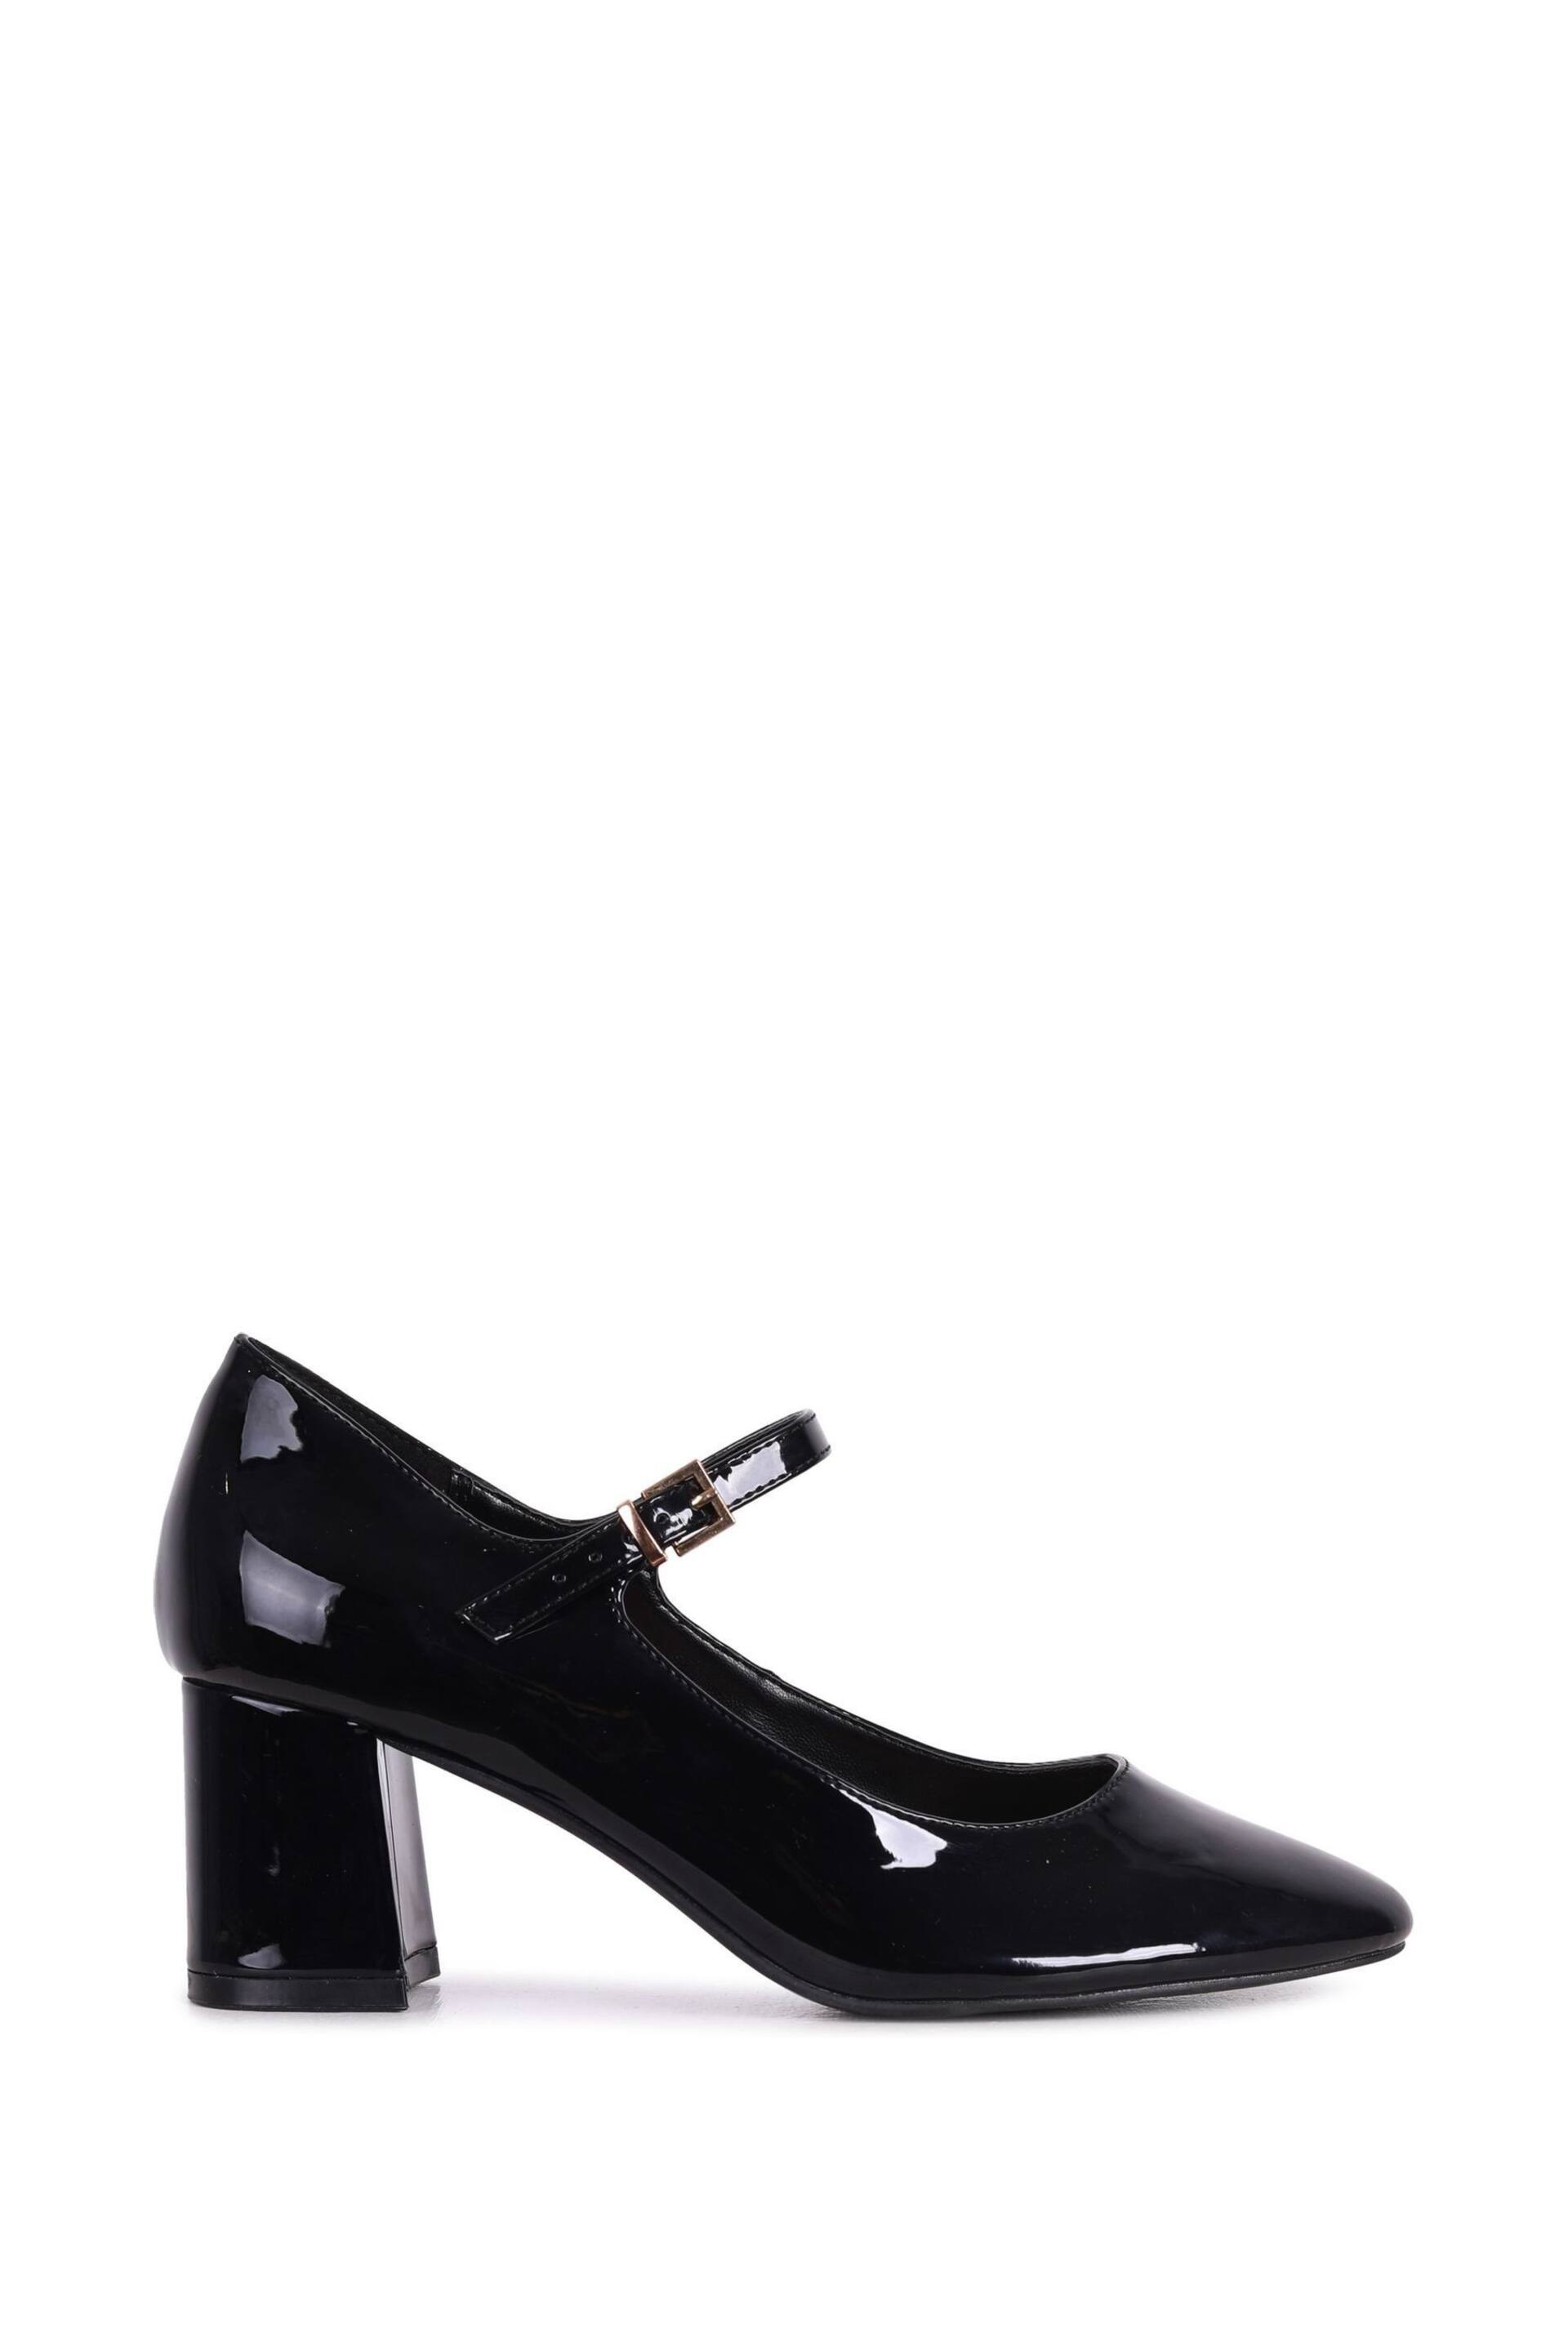 Linzi Black Patent Madeline Court Heel with Block Heels - Image 2 of 4